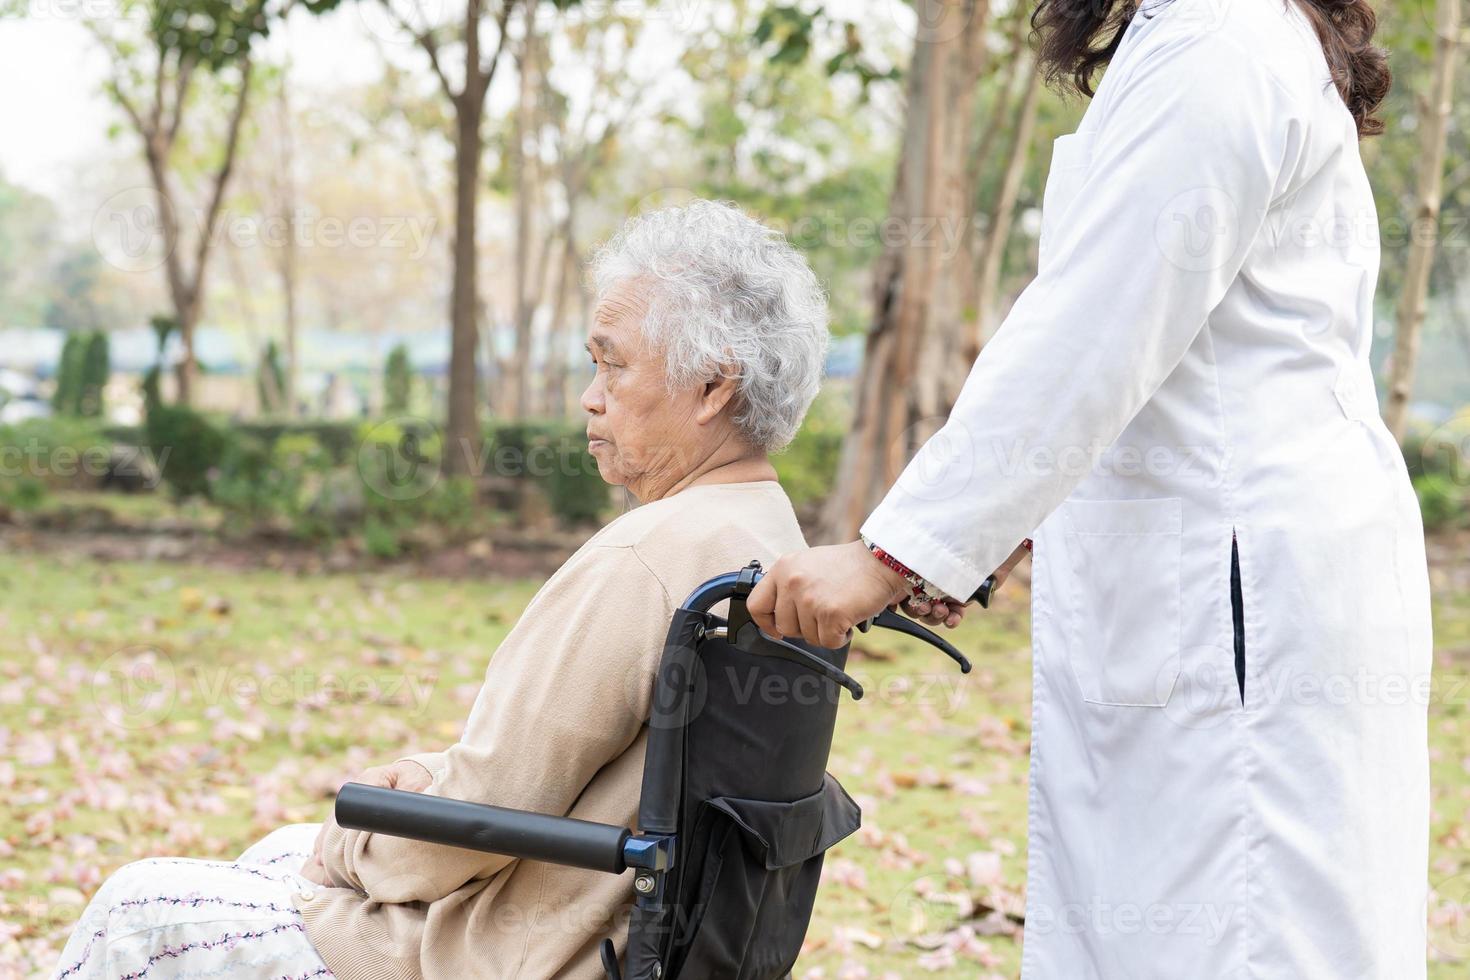 dokter hulp en zorg Aziatische senior of oudere oude dame vrouw patiënt zittend op rolstoel op verpleegafdeling ziekenhuis, gezond sterk medisch concept foto